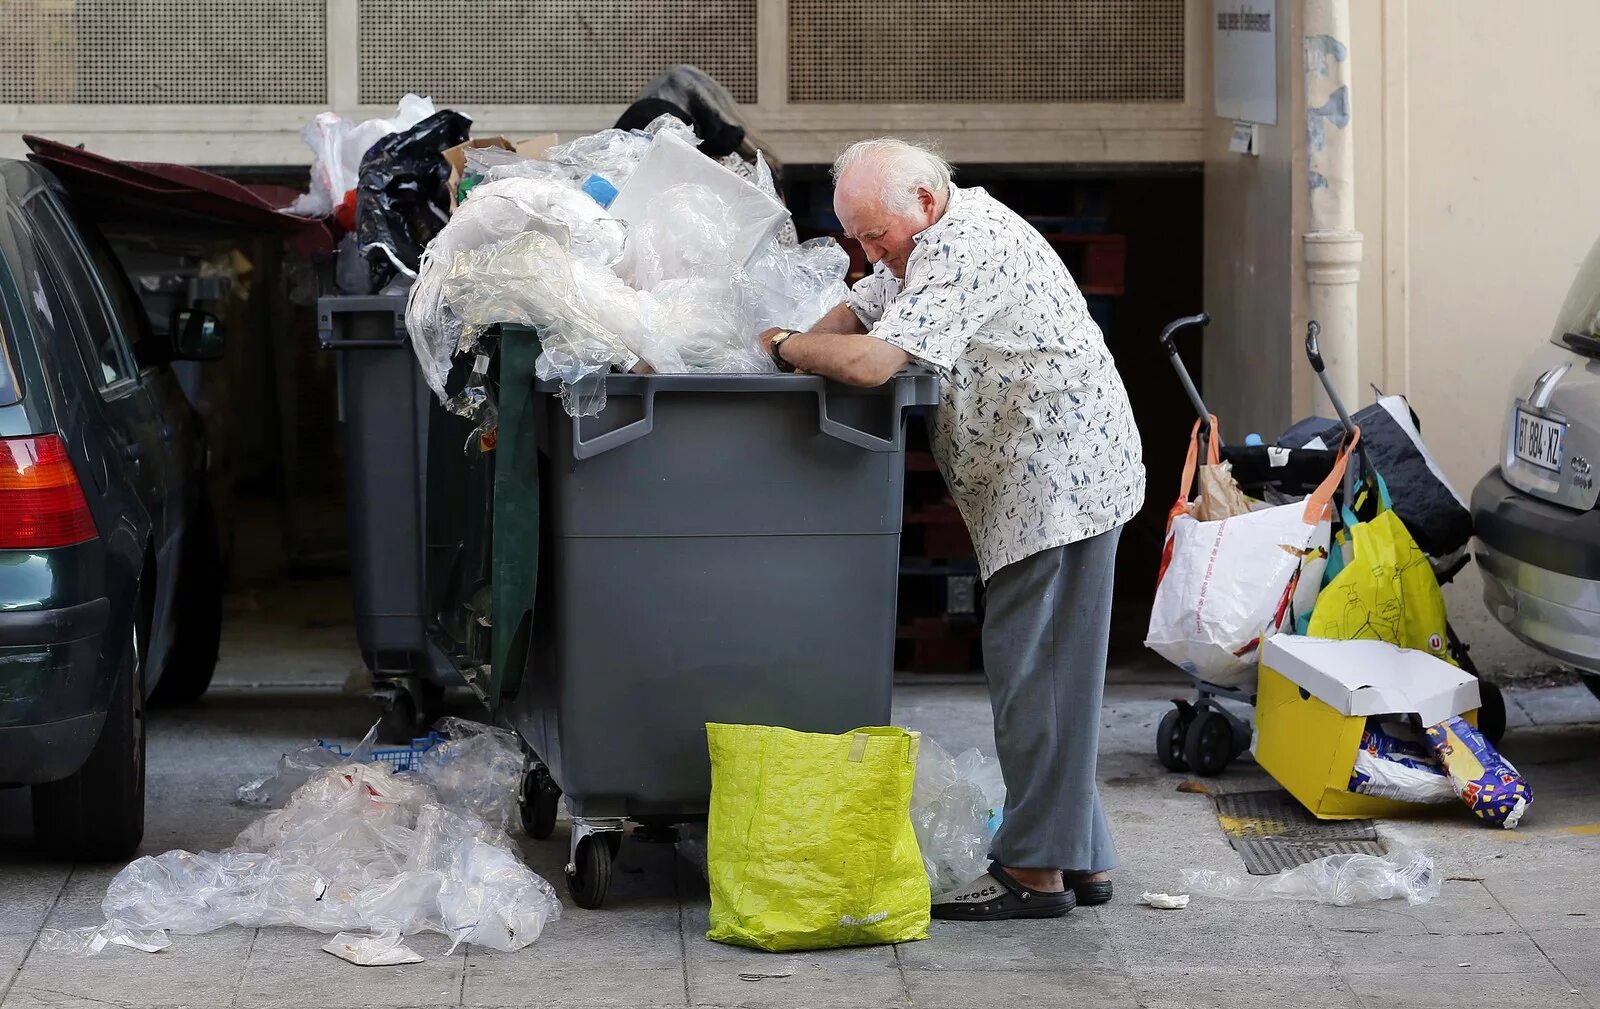 Пенсионеры роются в мусорных Баках в Германии. Роется в мусорном контейнере. Пенсионеры роются в мусорке.